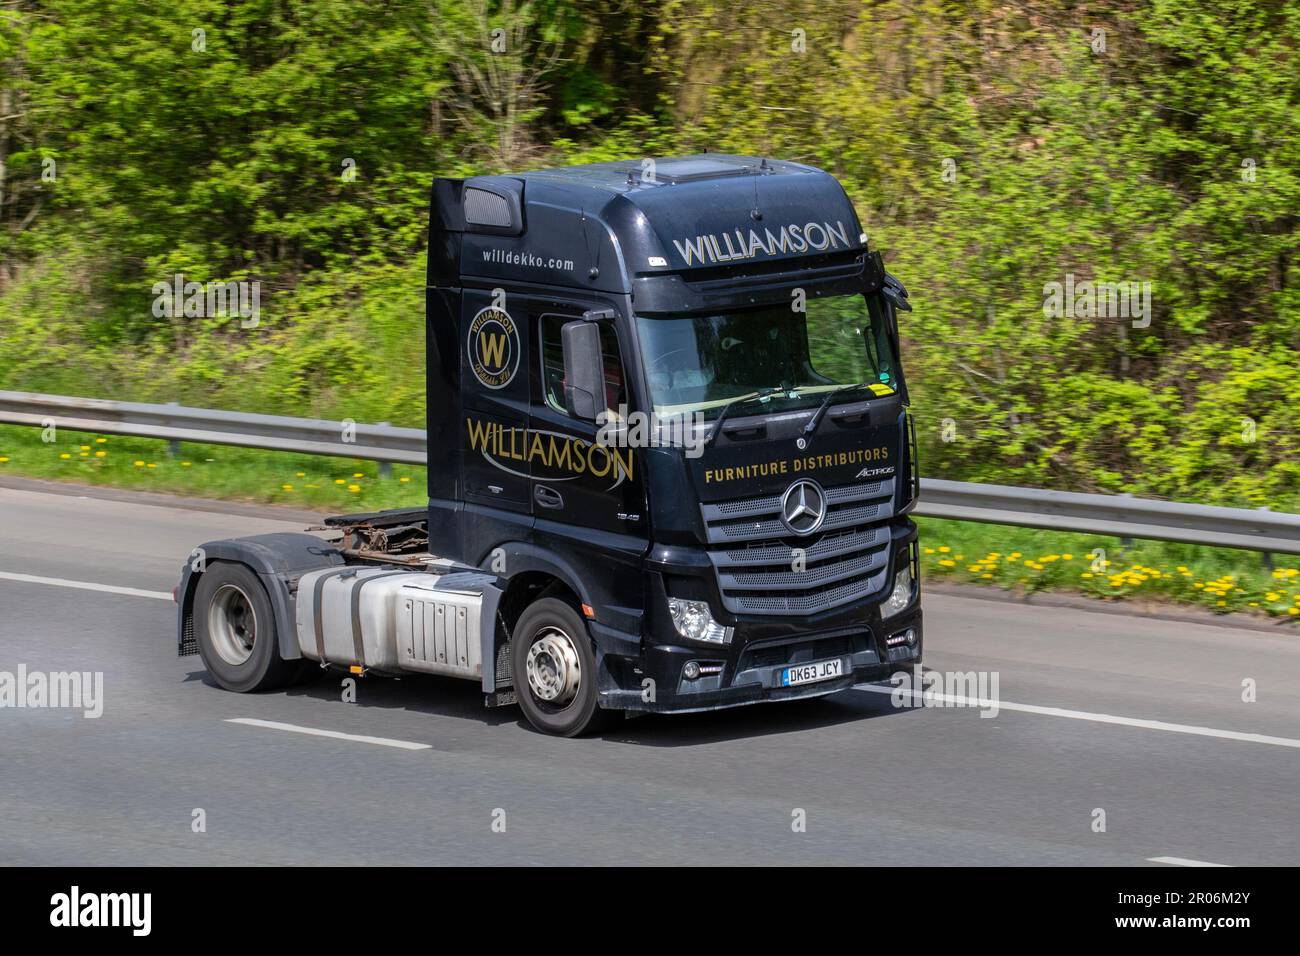 Williamson Furniture Distributors Mercedes Benz Tractor Unit; auf der Autobahn M61, Großbritannien Stockfoto